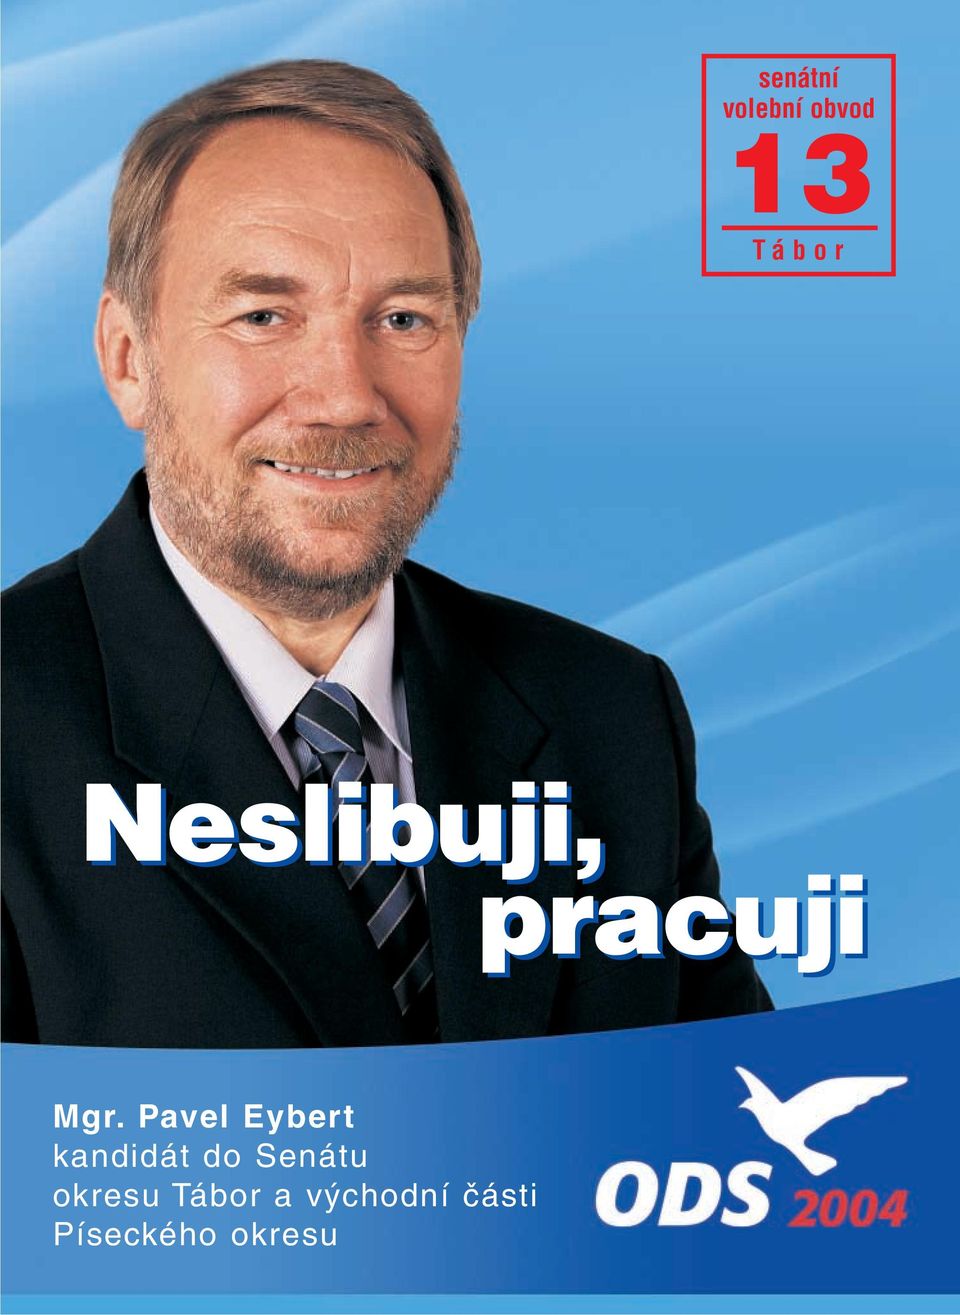 Pavel Eybert kandidát do Senátu